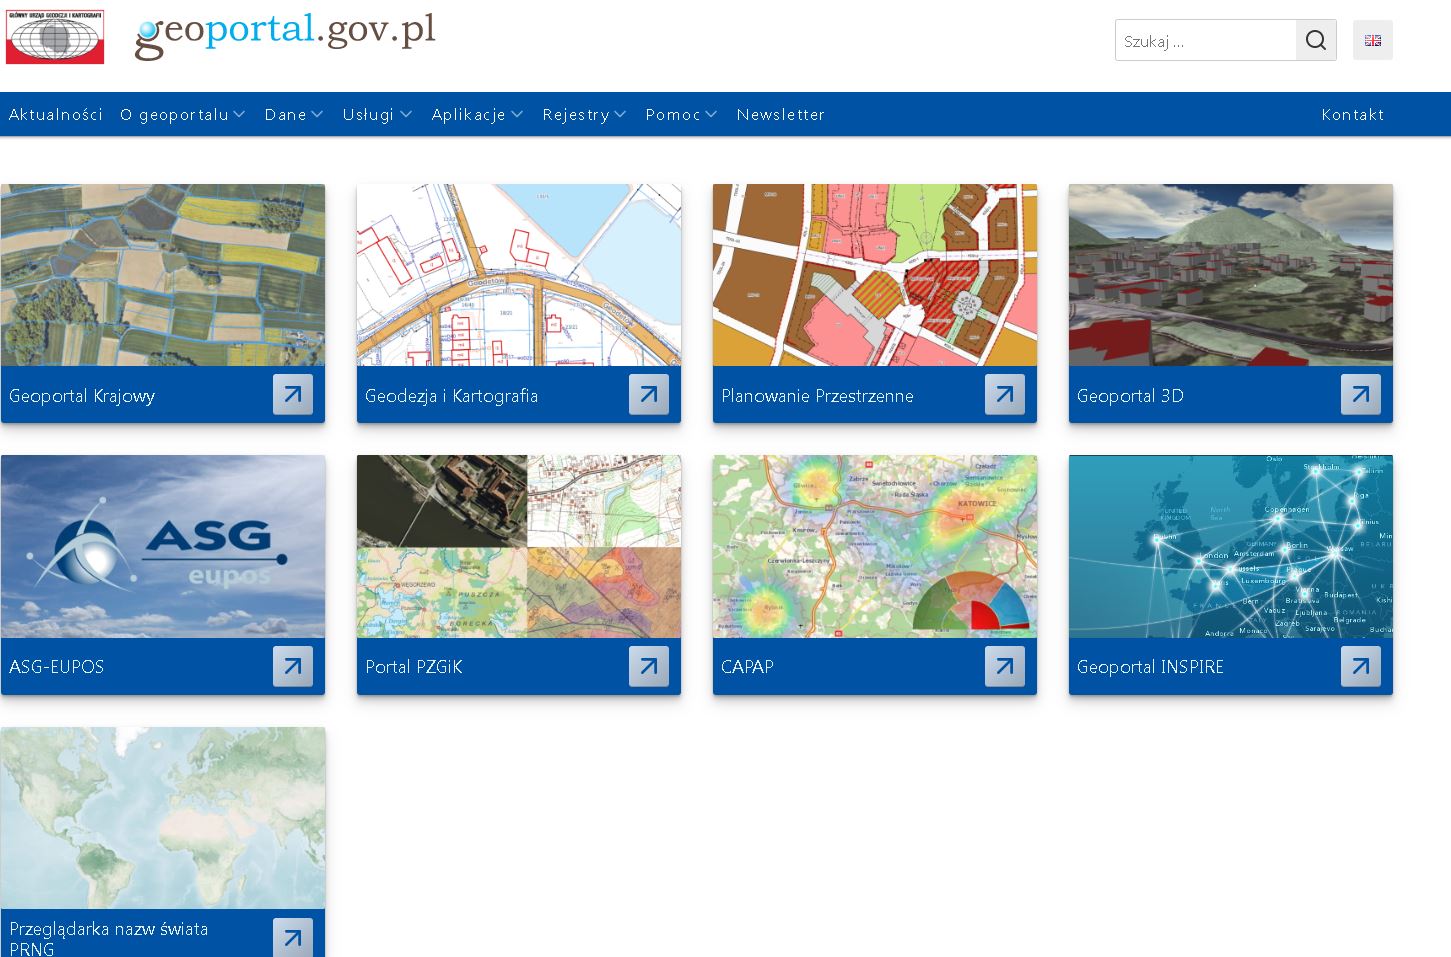 Ilustracja przedstawia stronę główną Geoportalu z nową kompozycją "Geodezja i Kartografia"